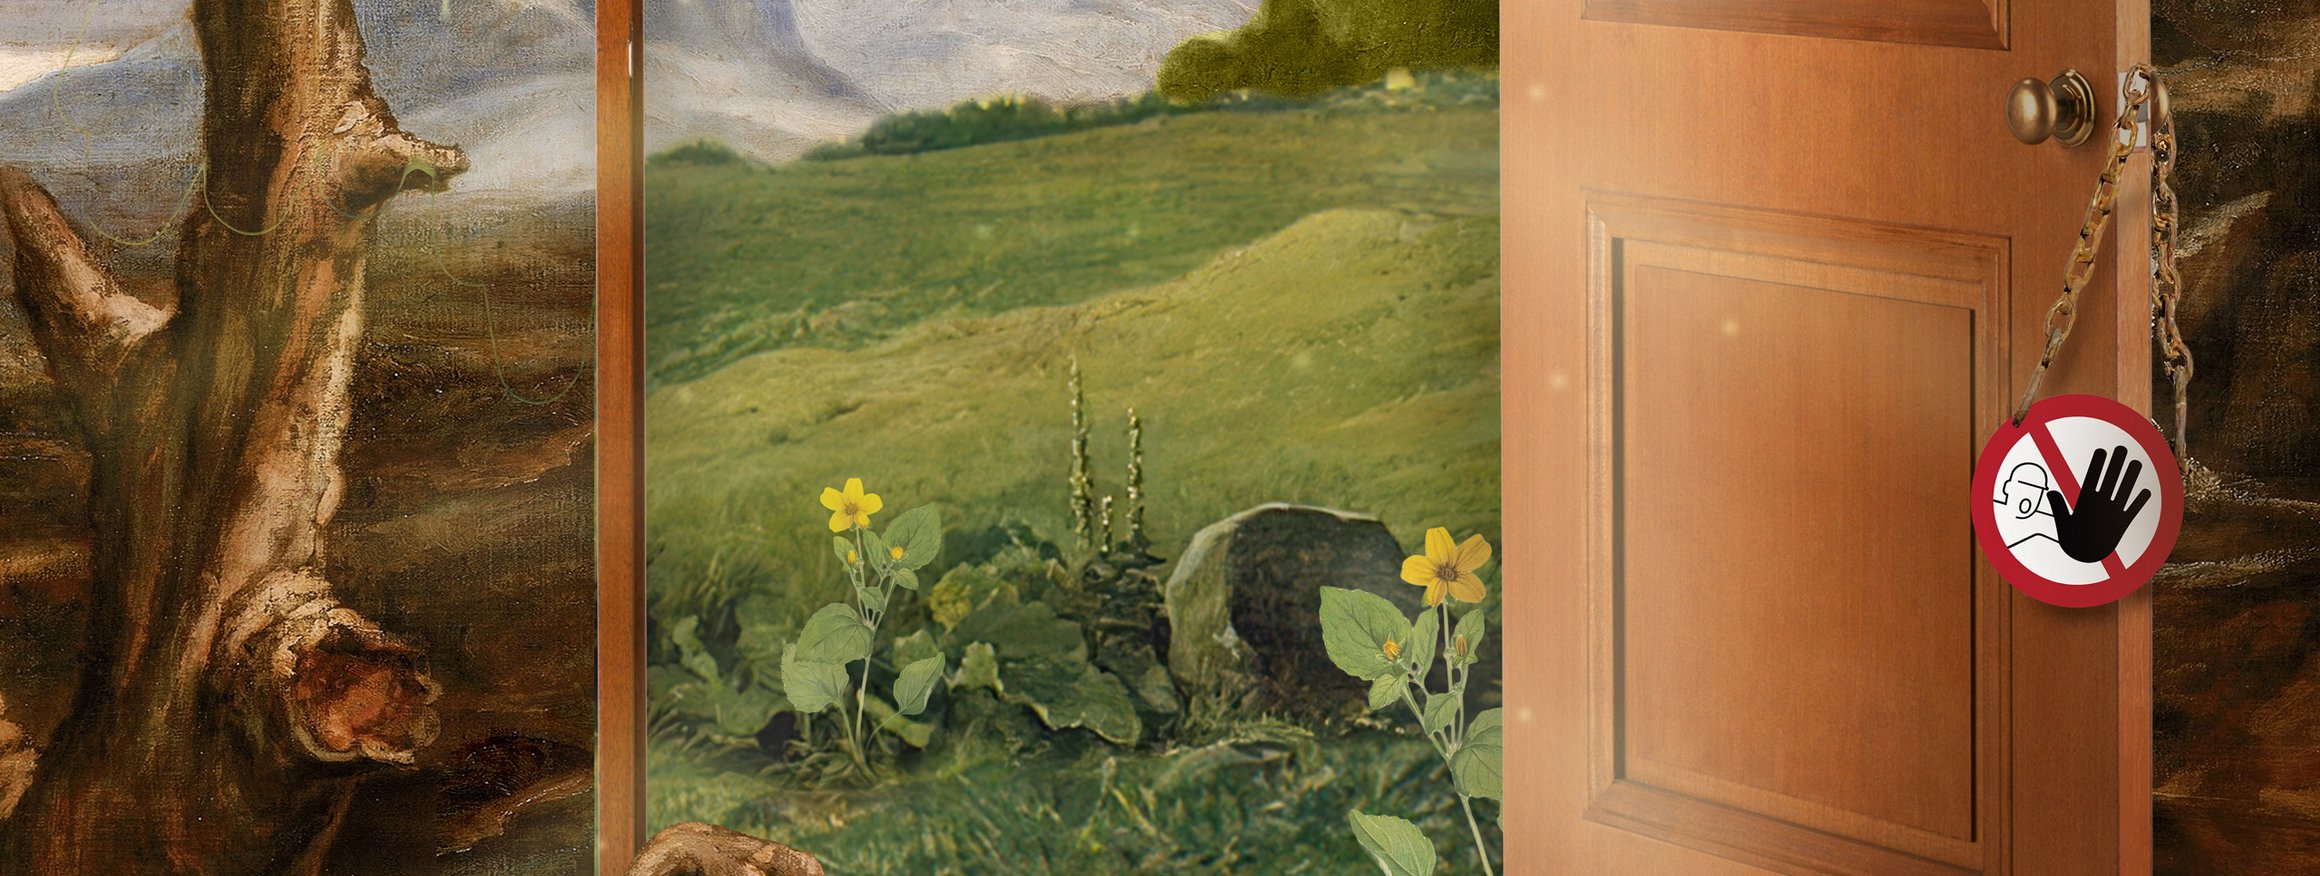 Die Illustration zeigt einen Baum mit grünen Blättern, auf dem ein Rabe sitzt, und der Ast aus einer Haustür aus Holz mit Verbotsschild am Türknopf, herauswächst.